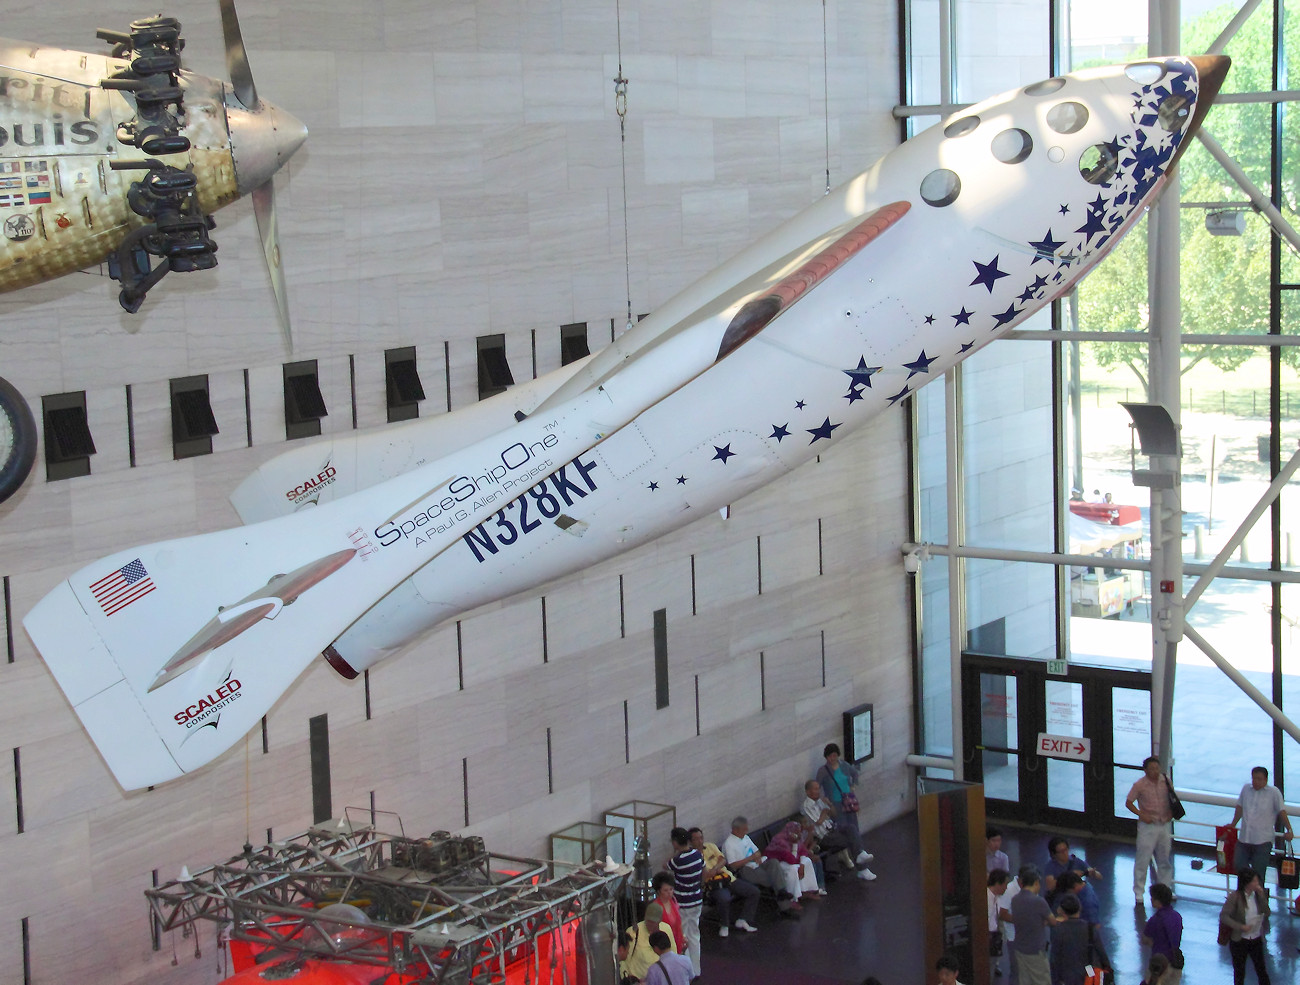 Space Ship One - Experimentalflugzeug des Luft- und Raumfahrtingenieur Burt Rutan